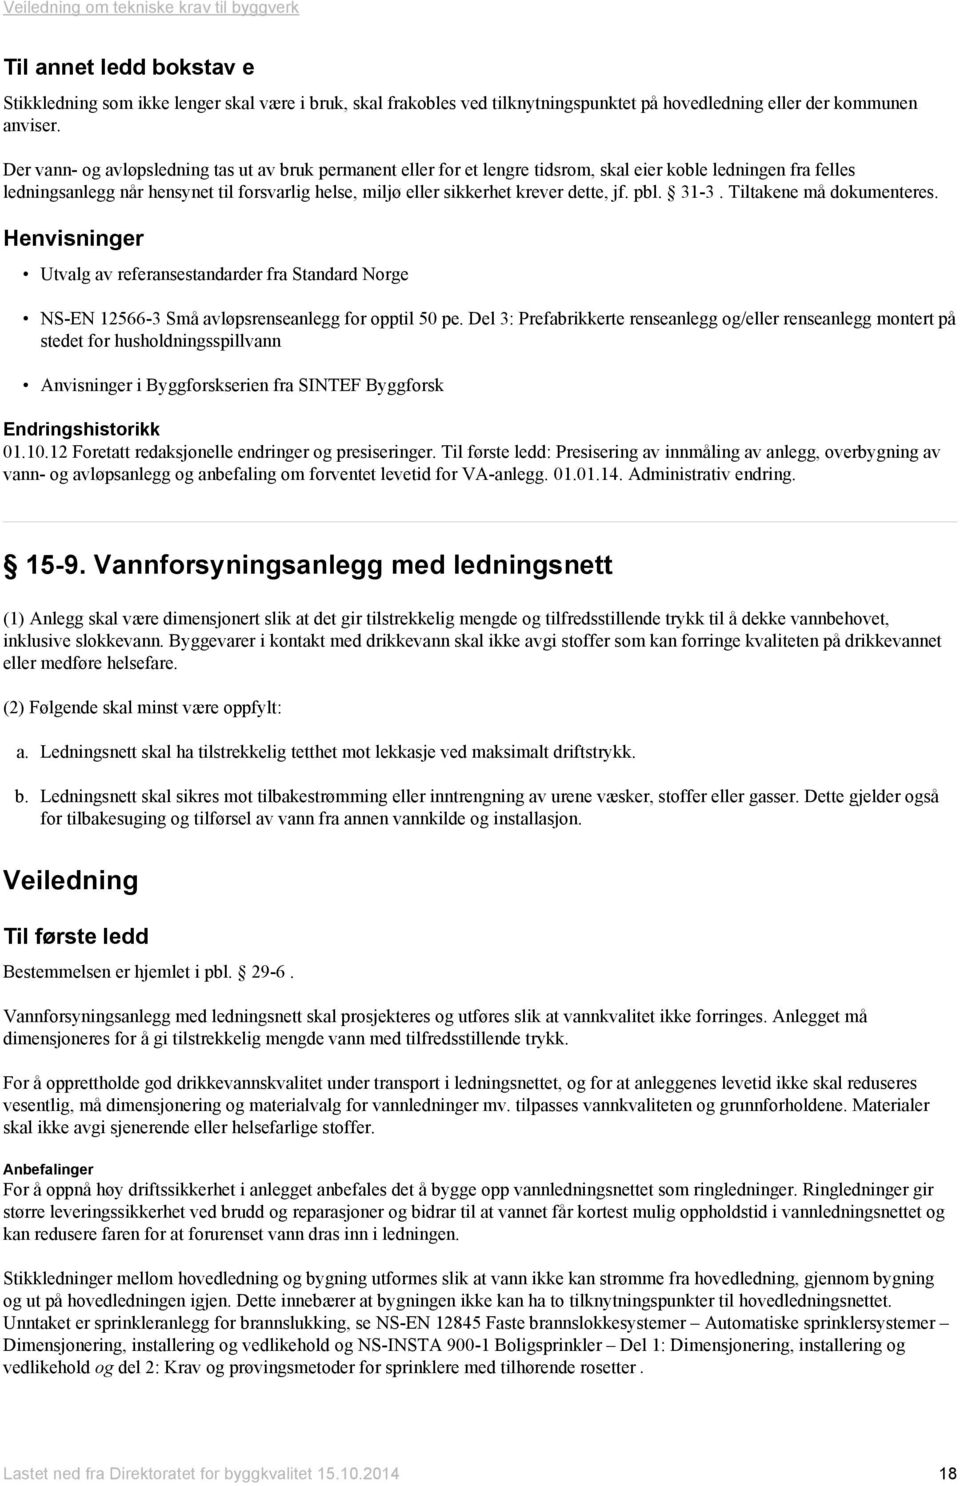 dette, jf. pbl. 31-3. Tiltakene må dokumenteres. Utvalg av referansestandarder fra Standard Norge NS-EN 12566-3 Små avløpsrenseanlegg for opptil 50 pe.